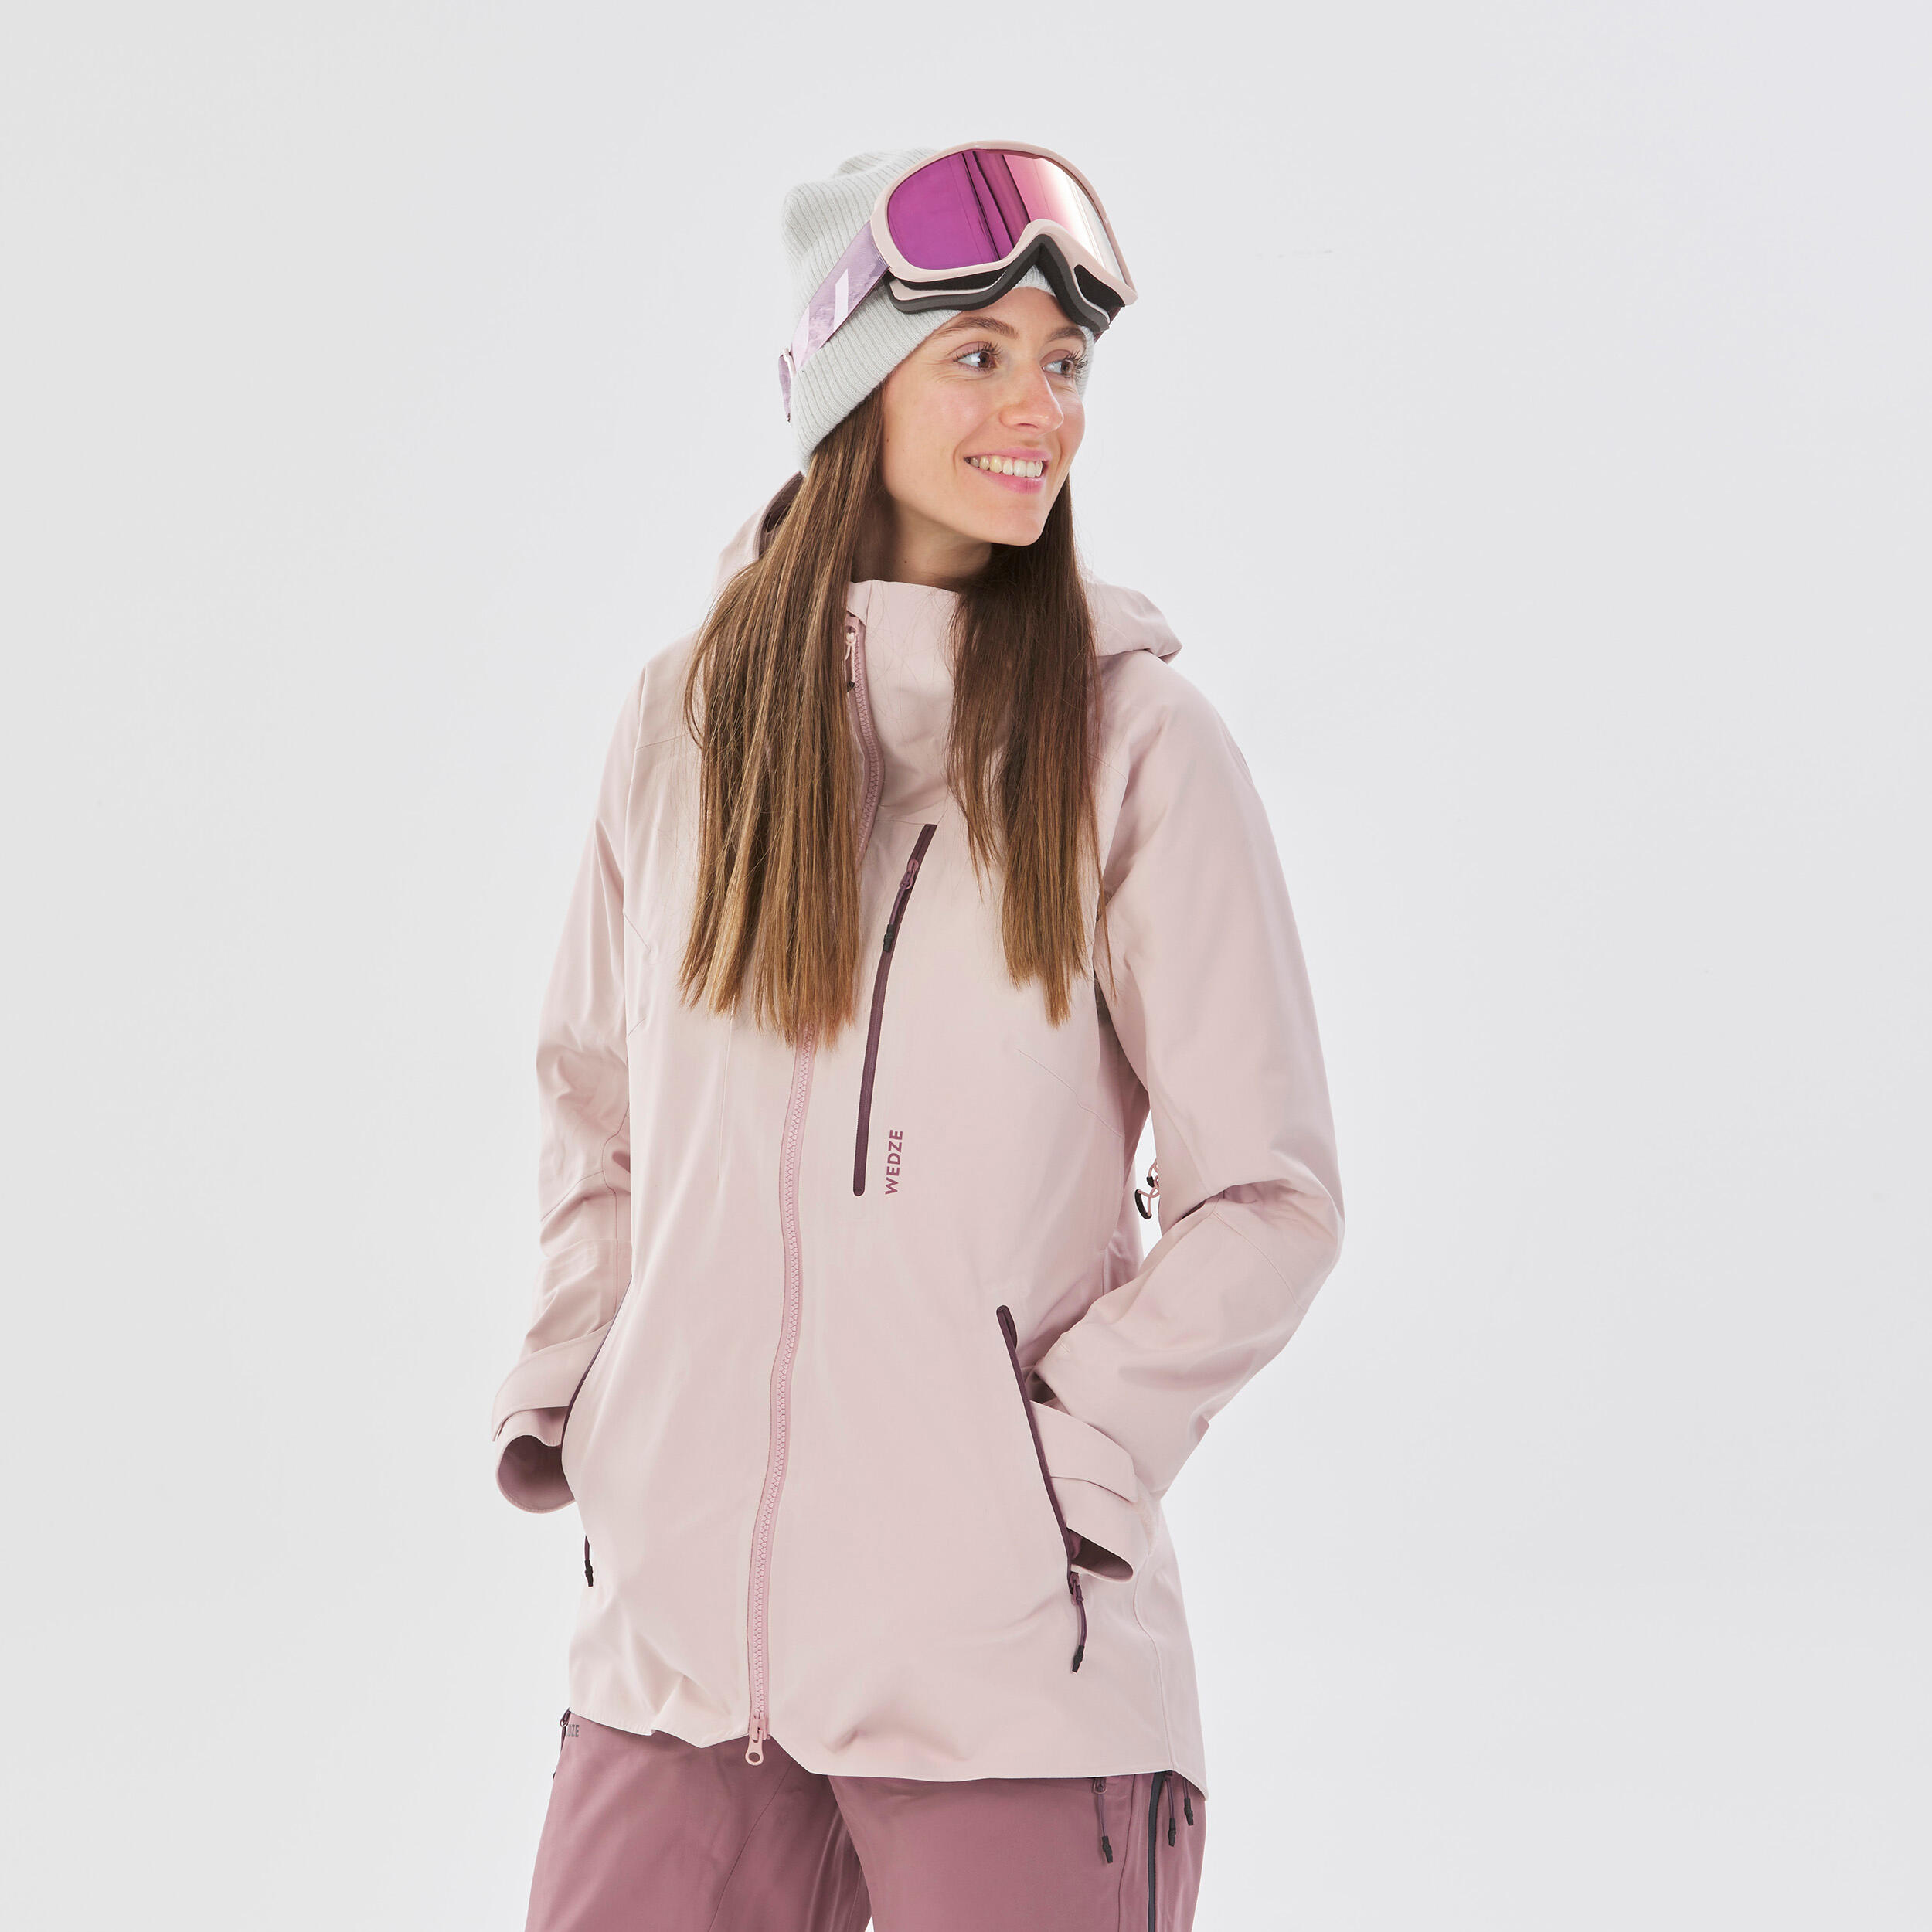 Avalanche Women's Ski Jacket - Sun & Ski Sports